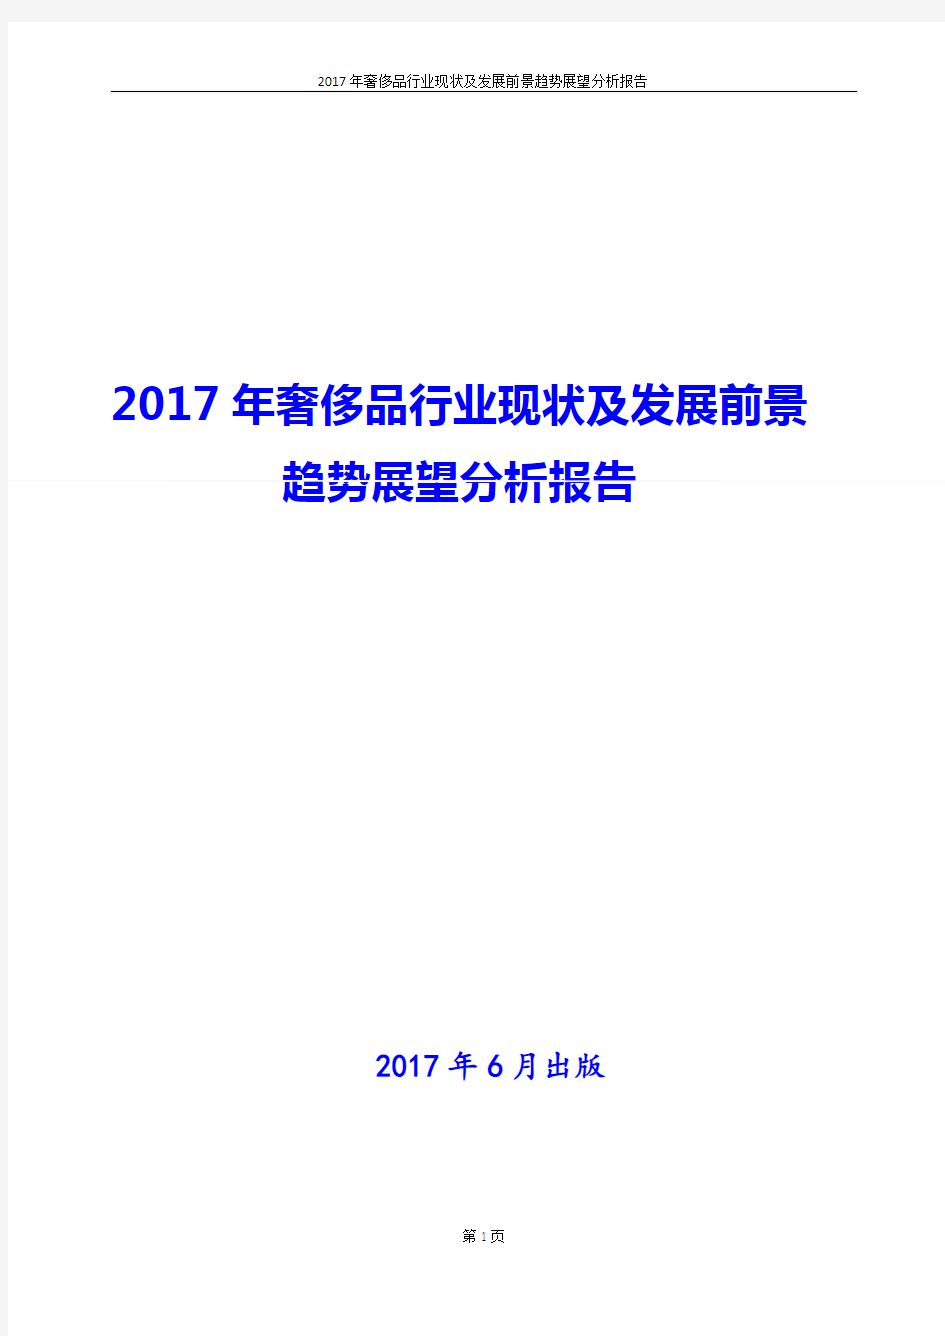 2017年奢侈品行业发展分析报告